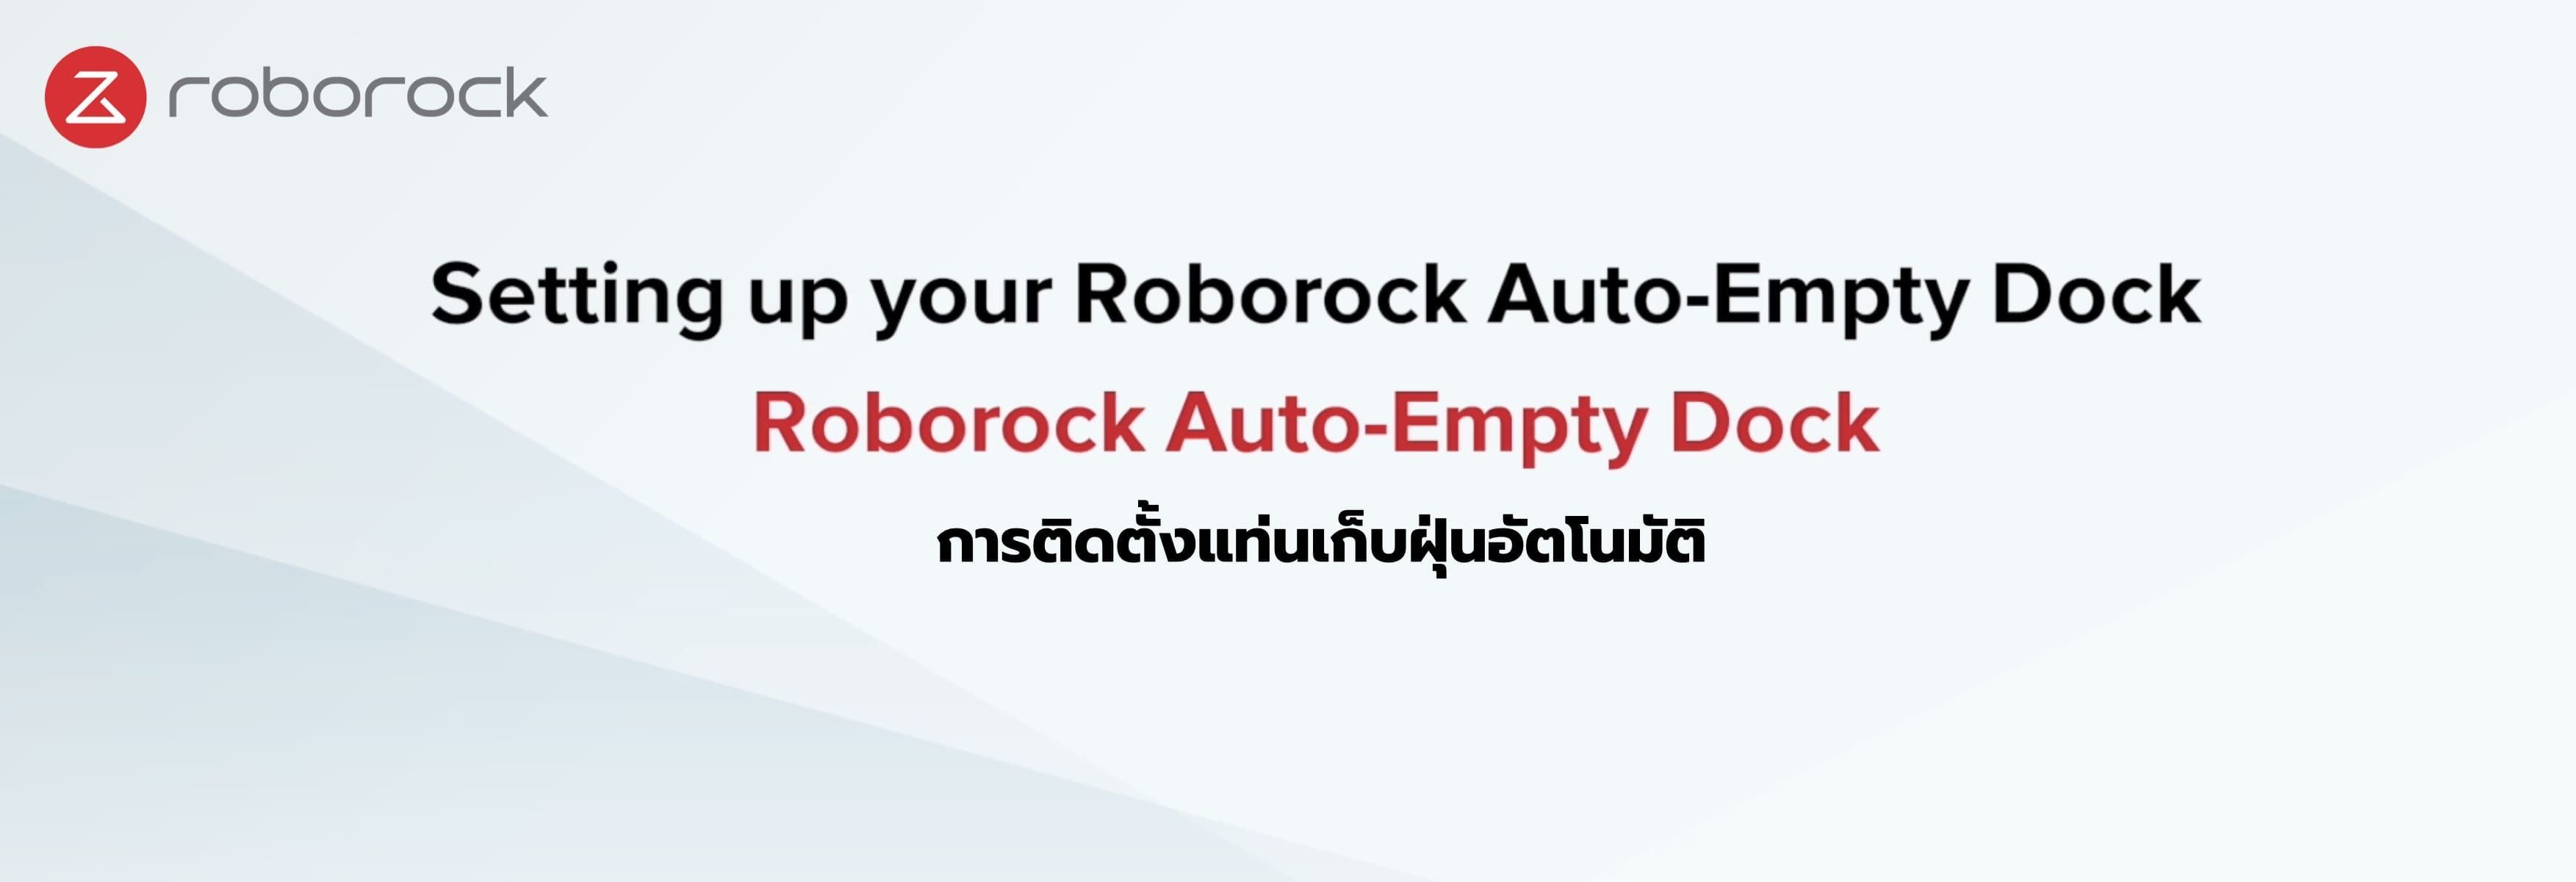 การติดตั้งแท่นเก็บฝุ่นอัตโนมัติ โรโบร็อค Roborock Auto-Empty Dock และ Roborock S7+ 